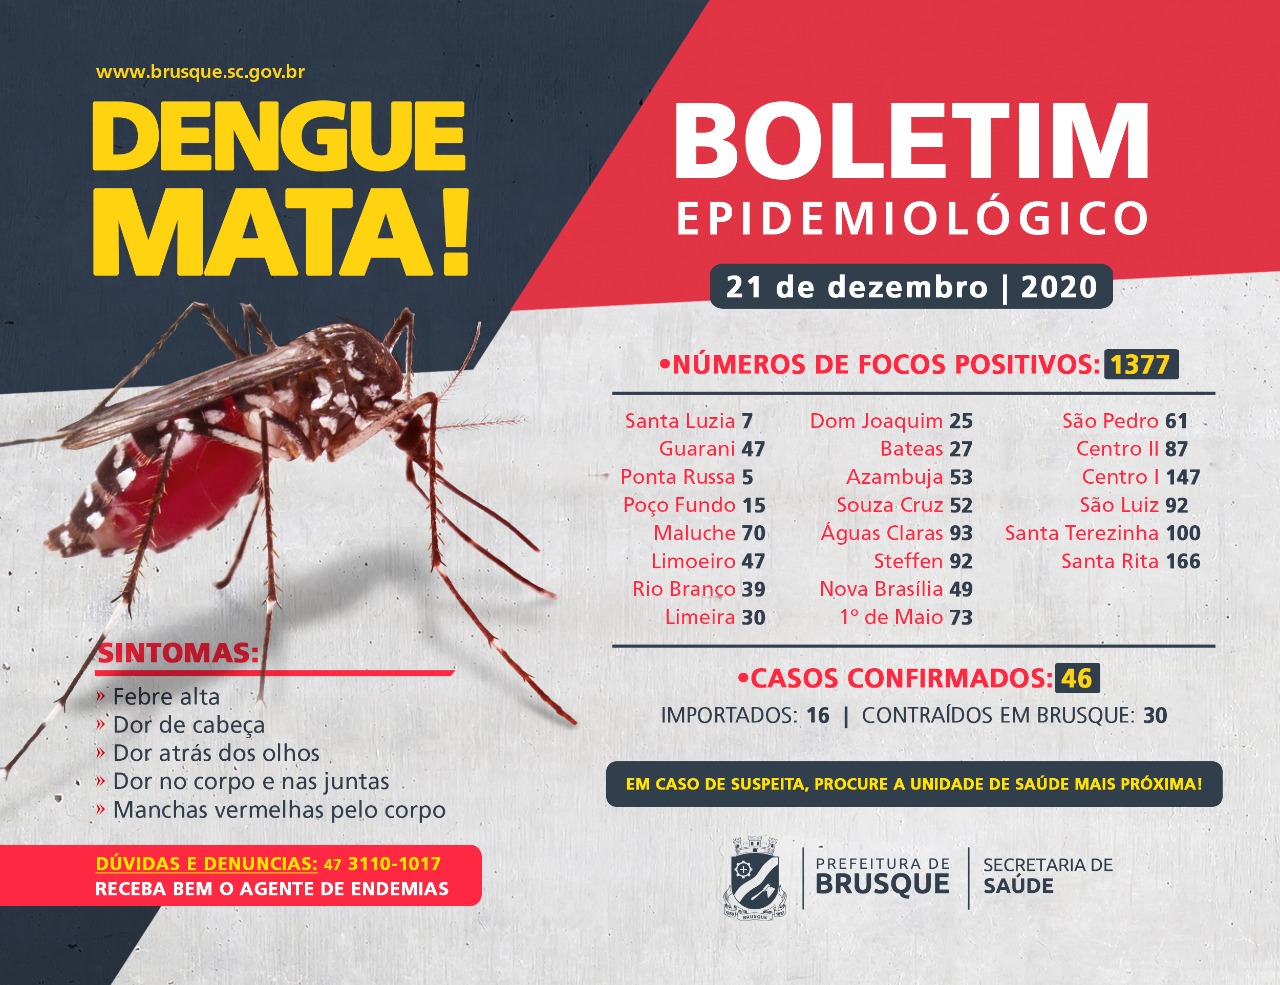 Confira o boletim epidemiológico da dengue desta segunda-feira (21)